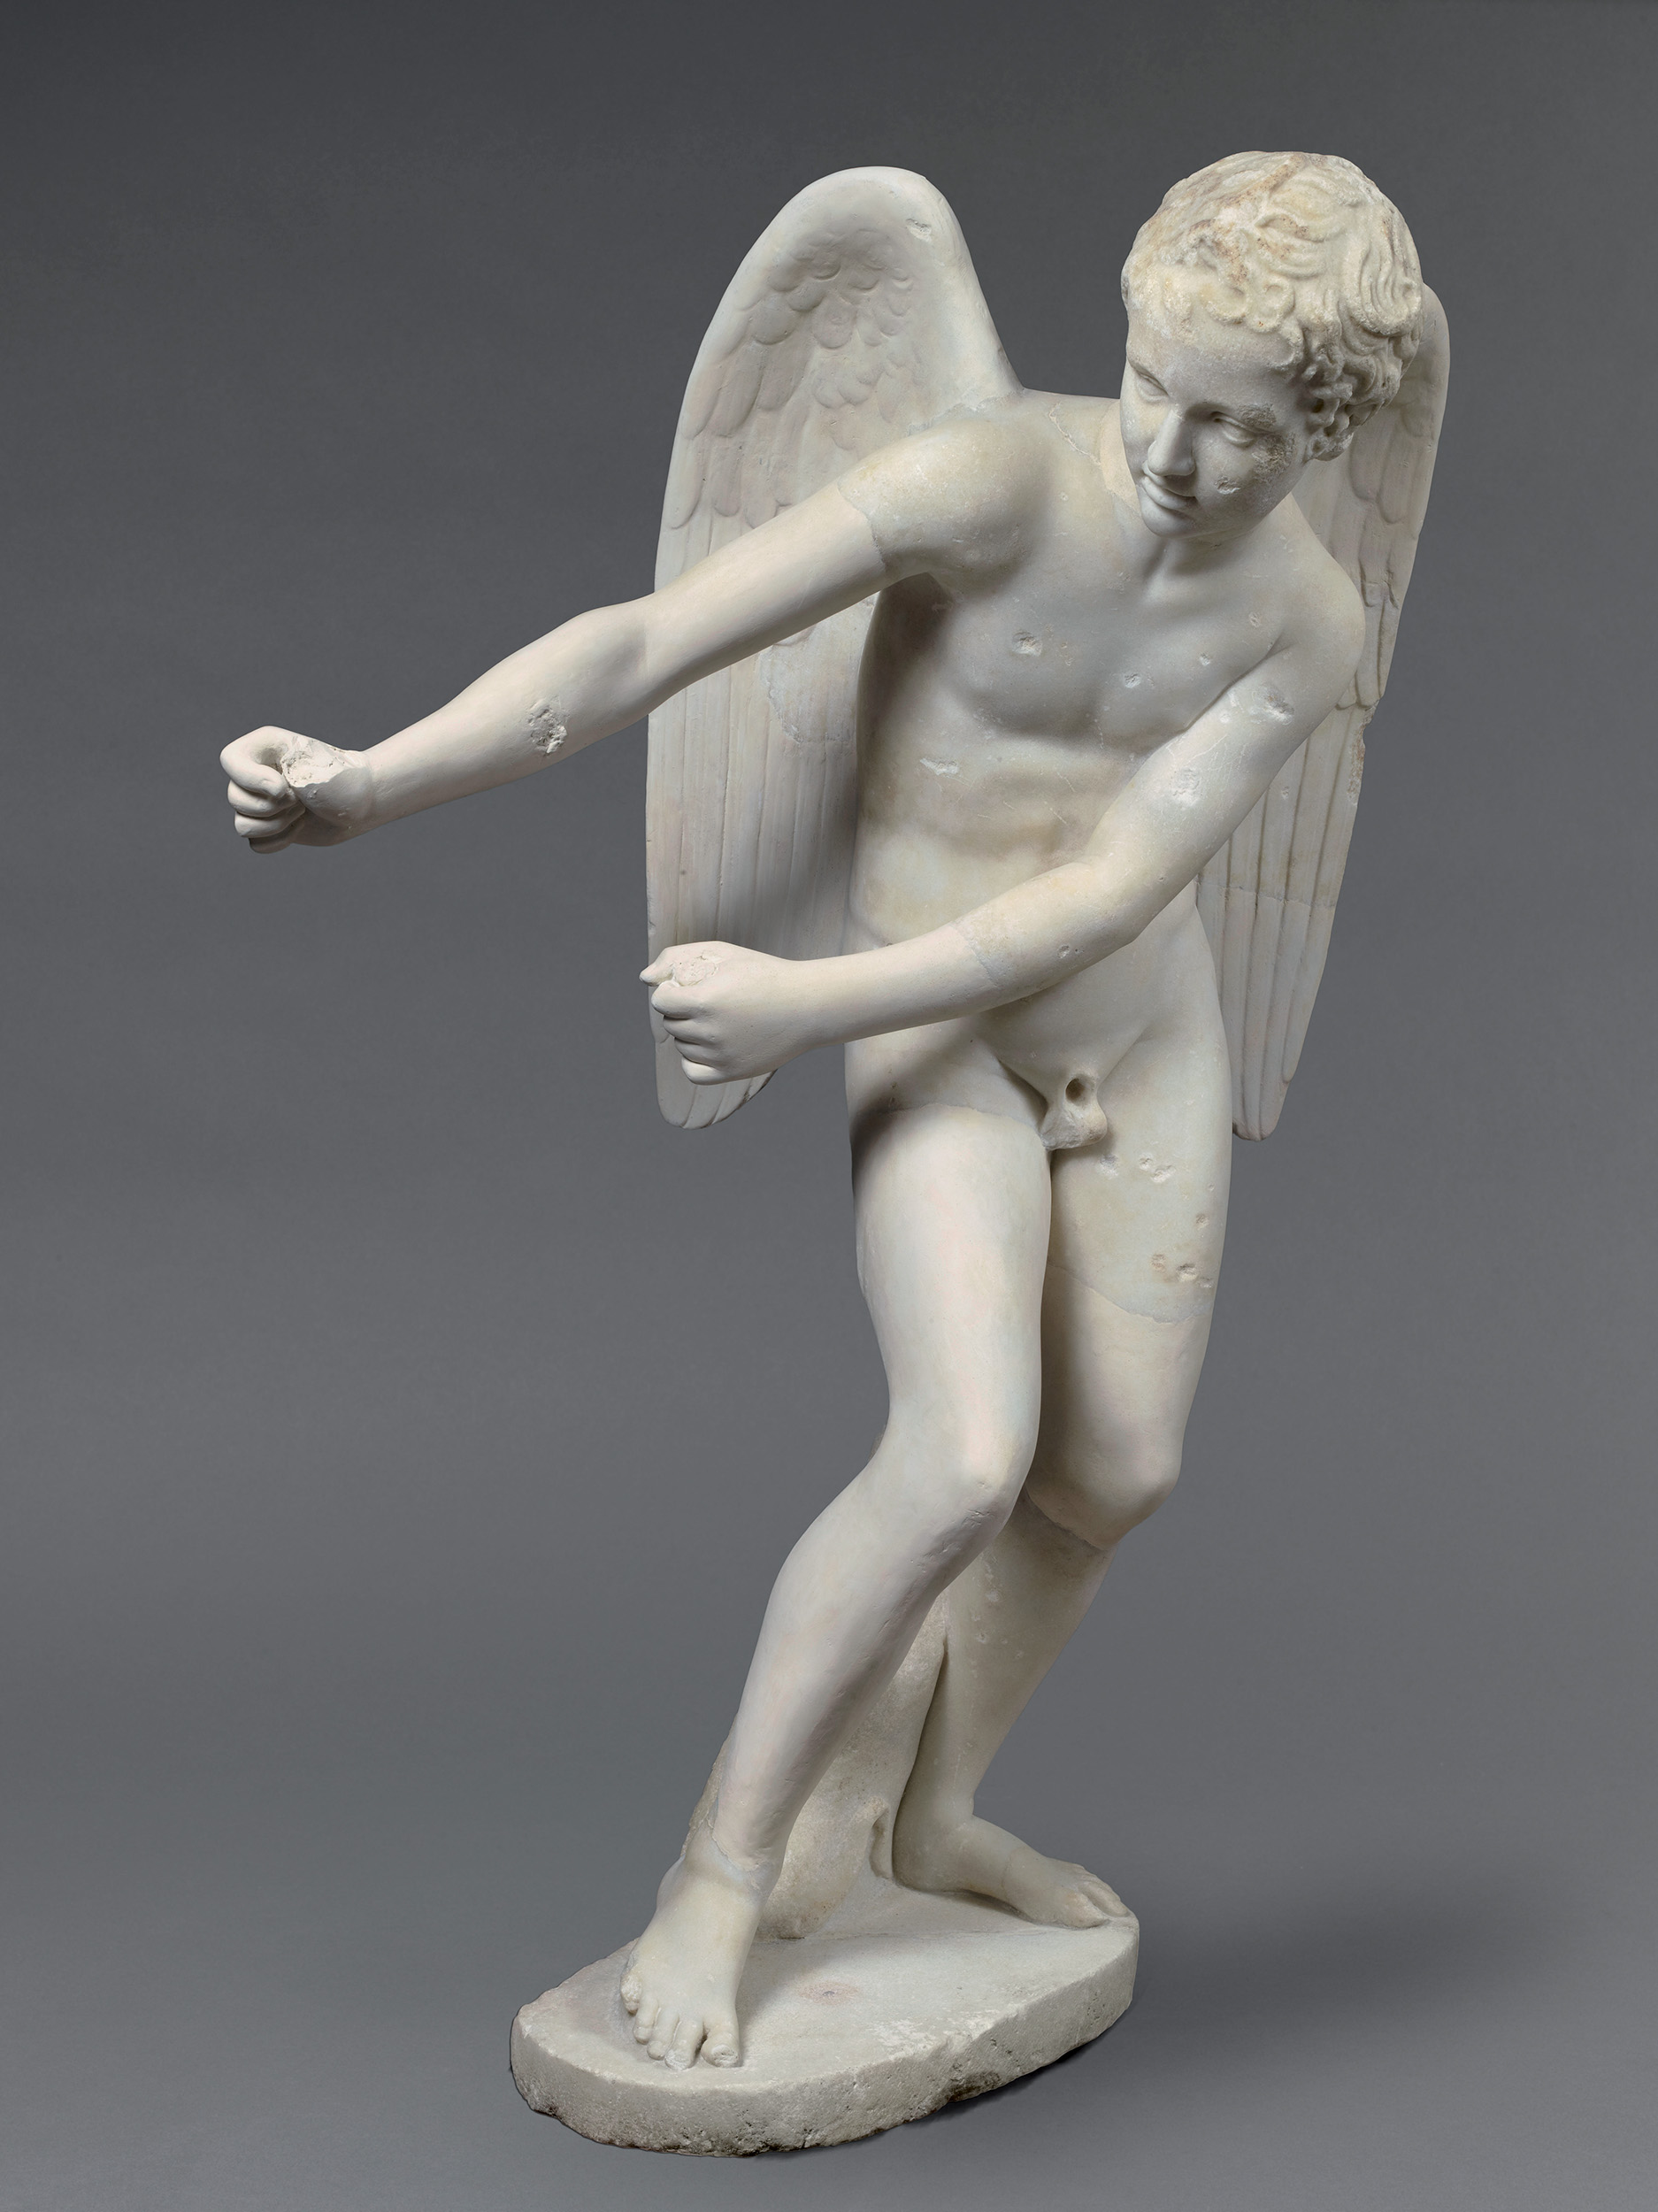 Μαρμάρινο άγαλμα του Έρωτα που τεντώνει το τόξο του  2ος αι. μ.Χ.  Ρώμη, Παλατίνος Λόφος  Παρίσι, Musée du Louvre 